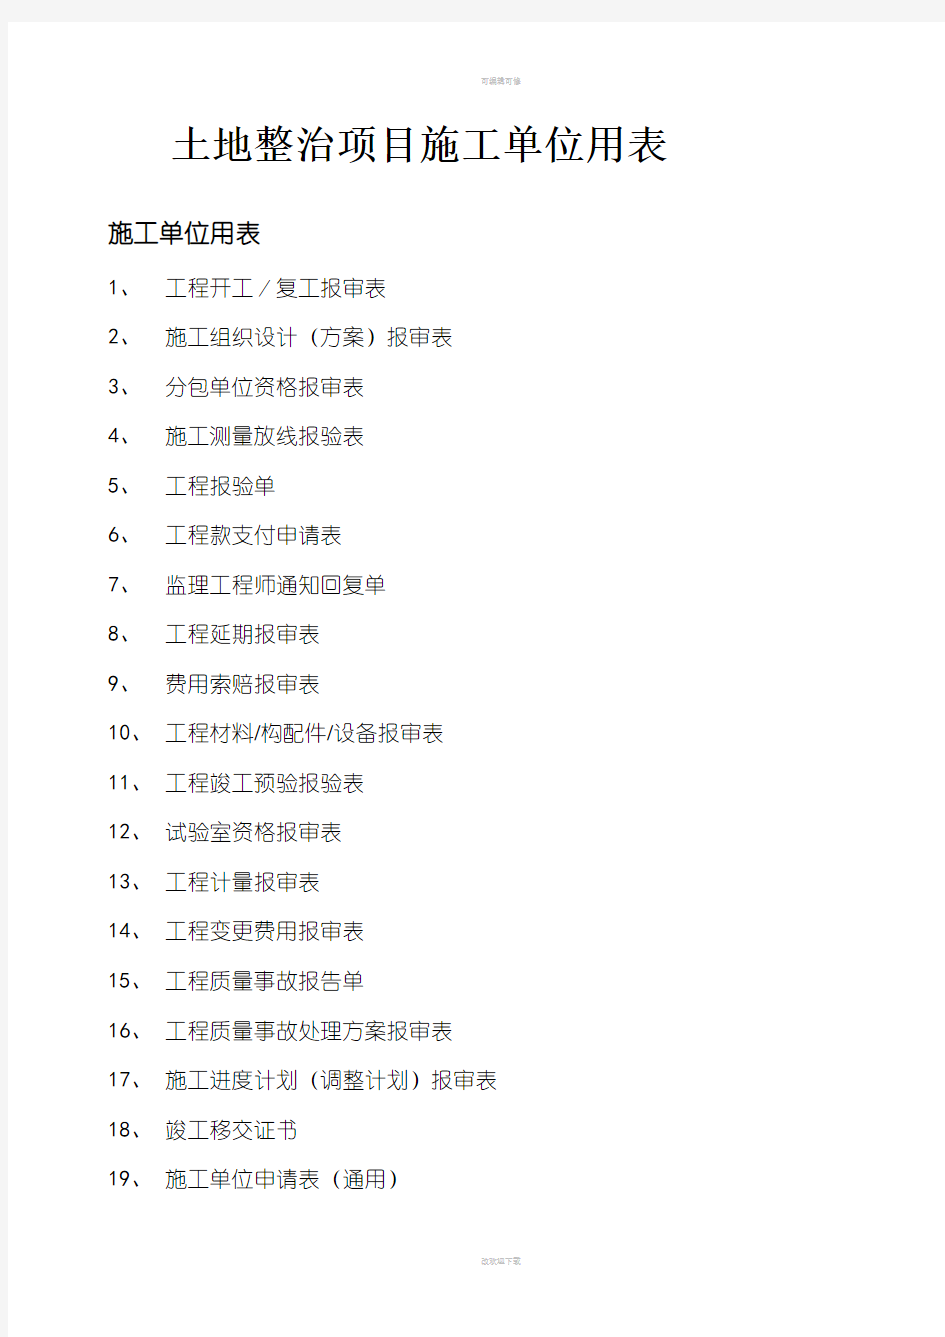 河北省土地整治项目施工单位用表